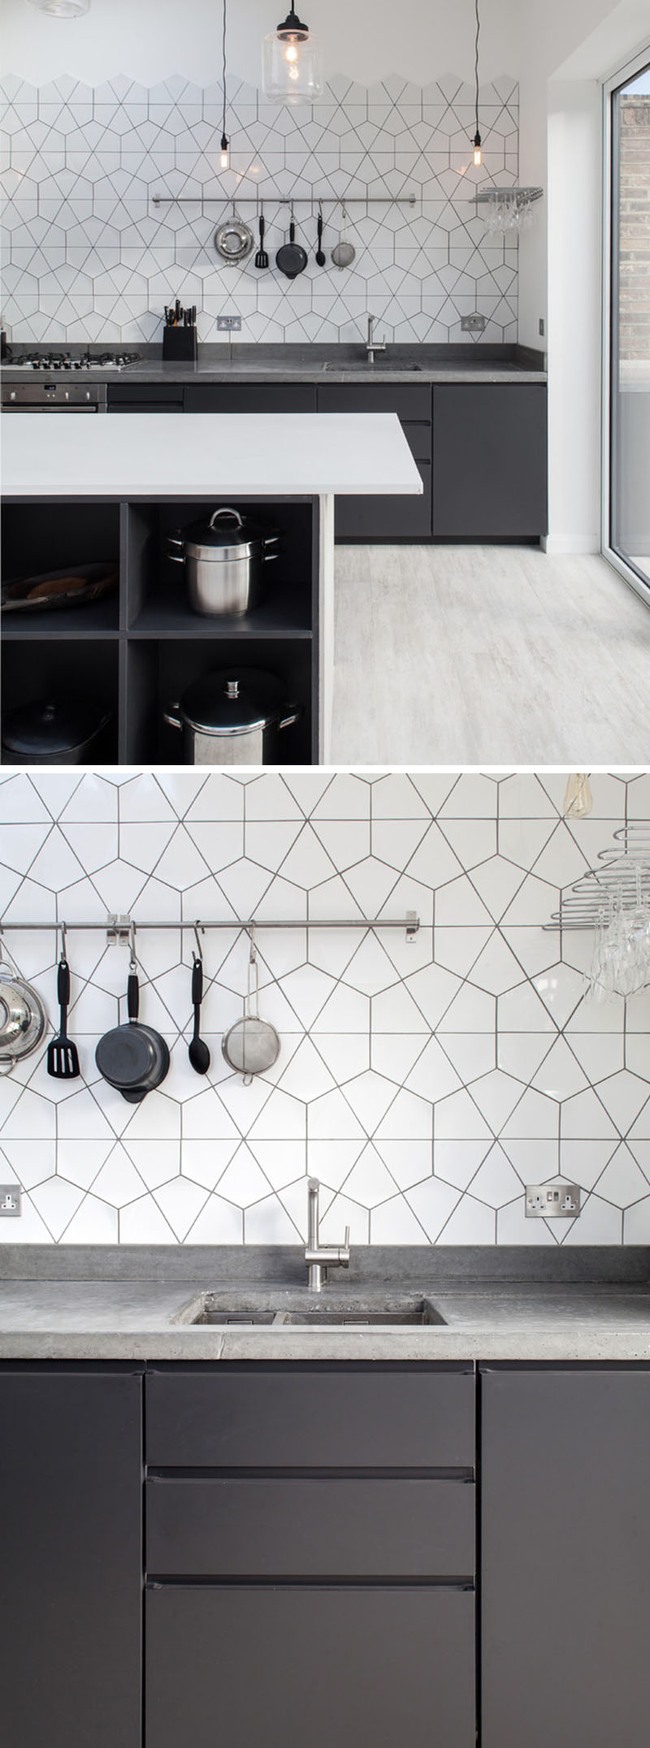 9 mẫu gạch ốp nhà bếp theo phong cách hình học cho chị em tùy ý lựa chọn - Ảnh 4.